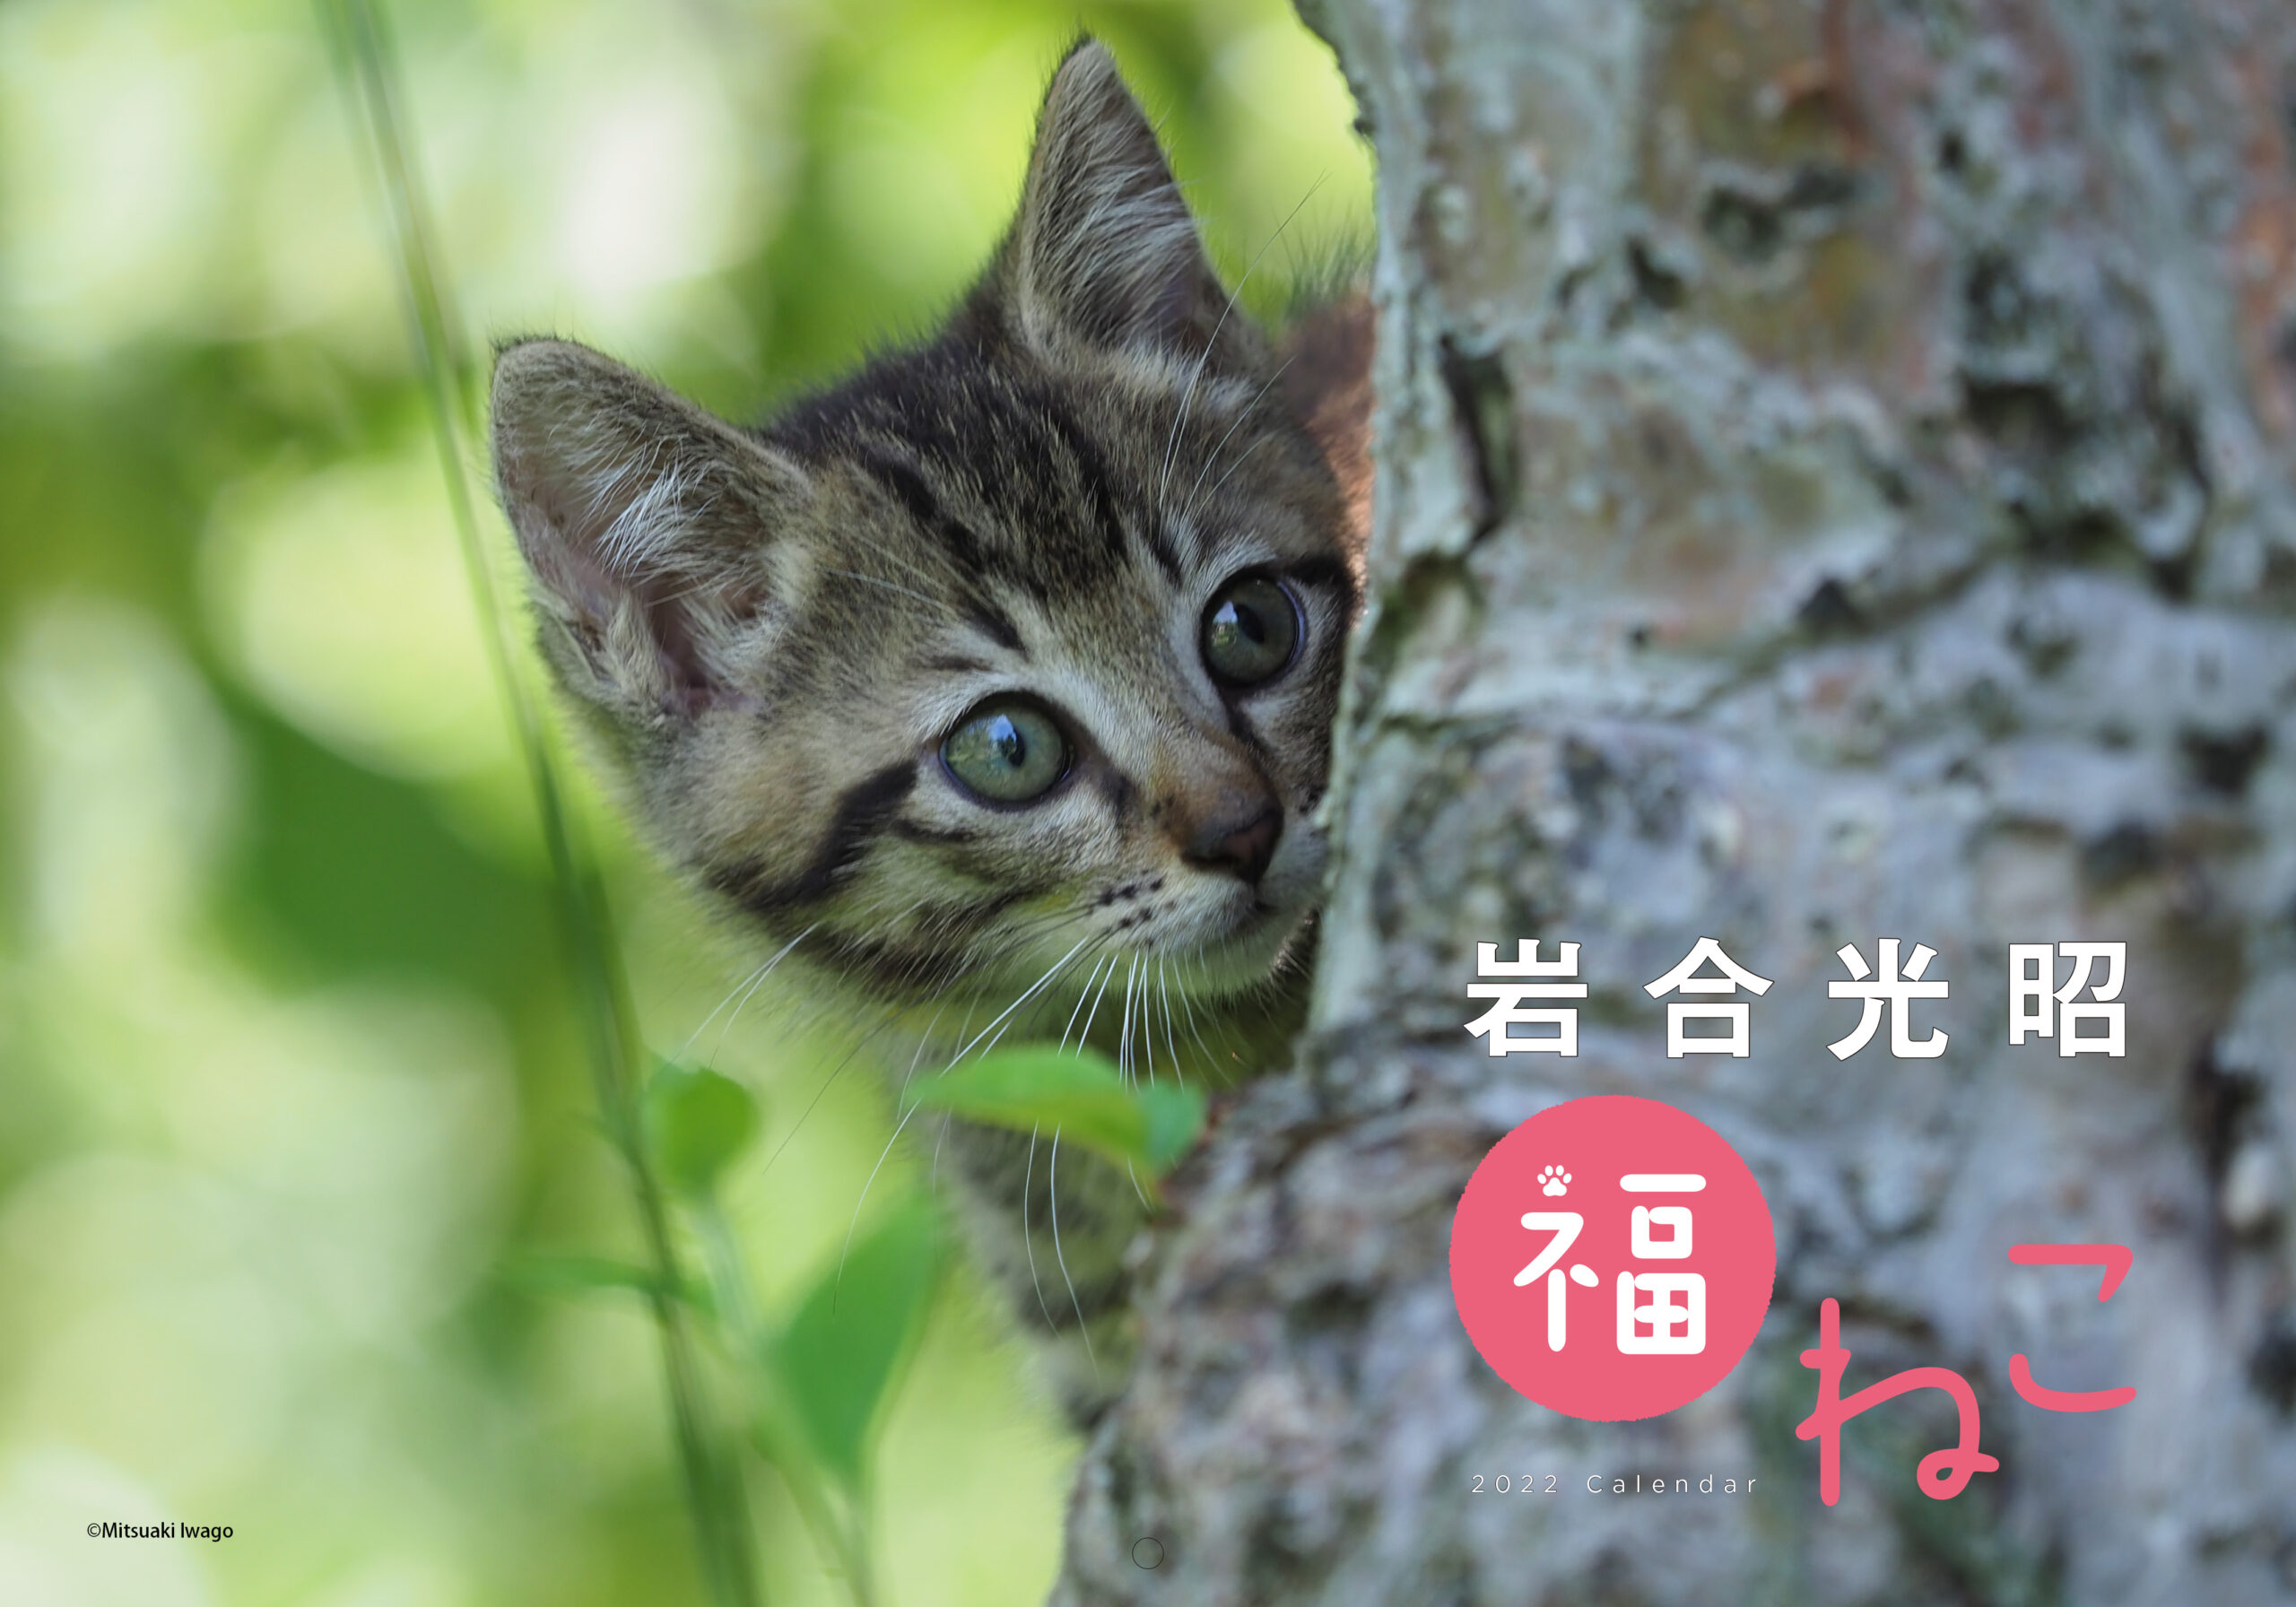 2022年も招くよ福をニャンニャンと、岩合さんの猫写真カレンダー